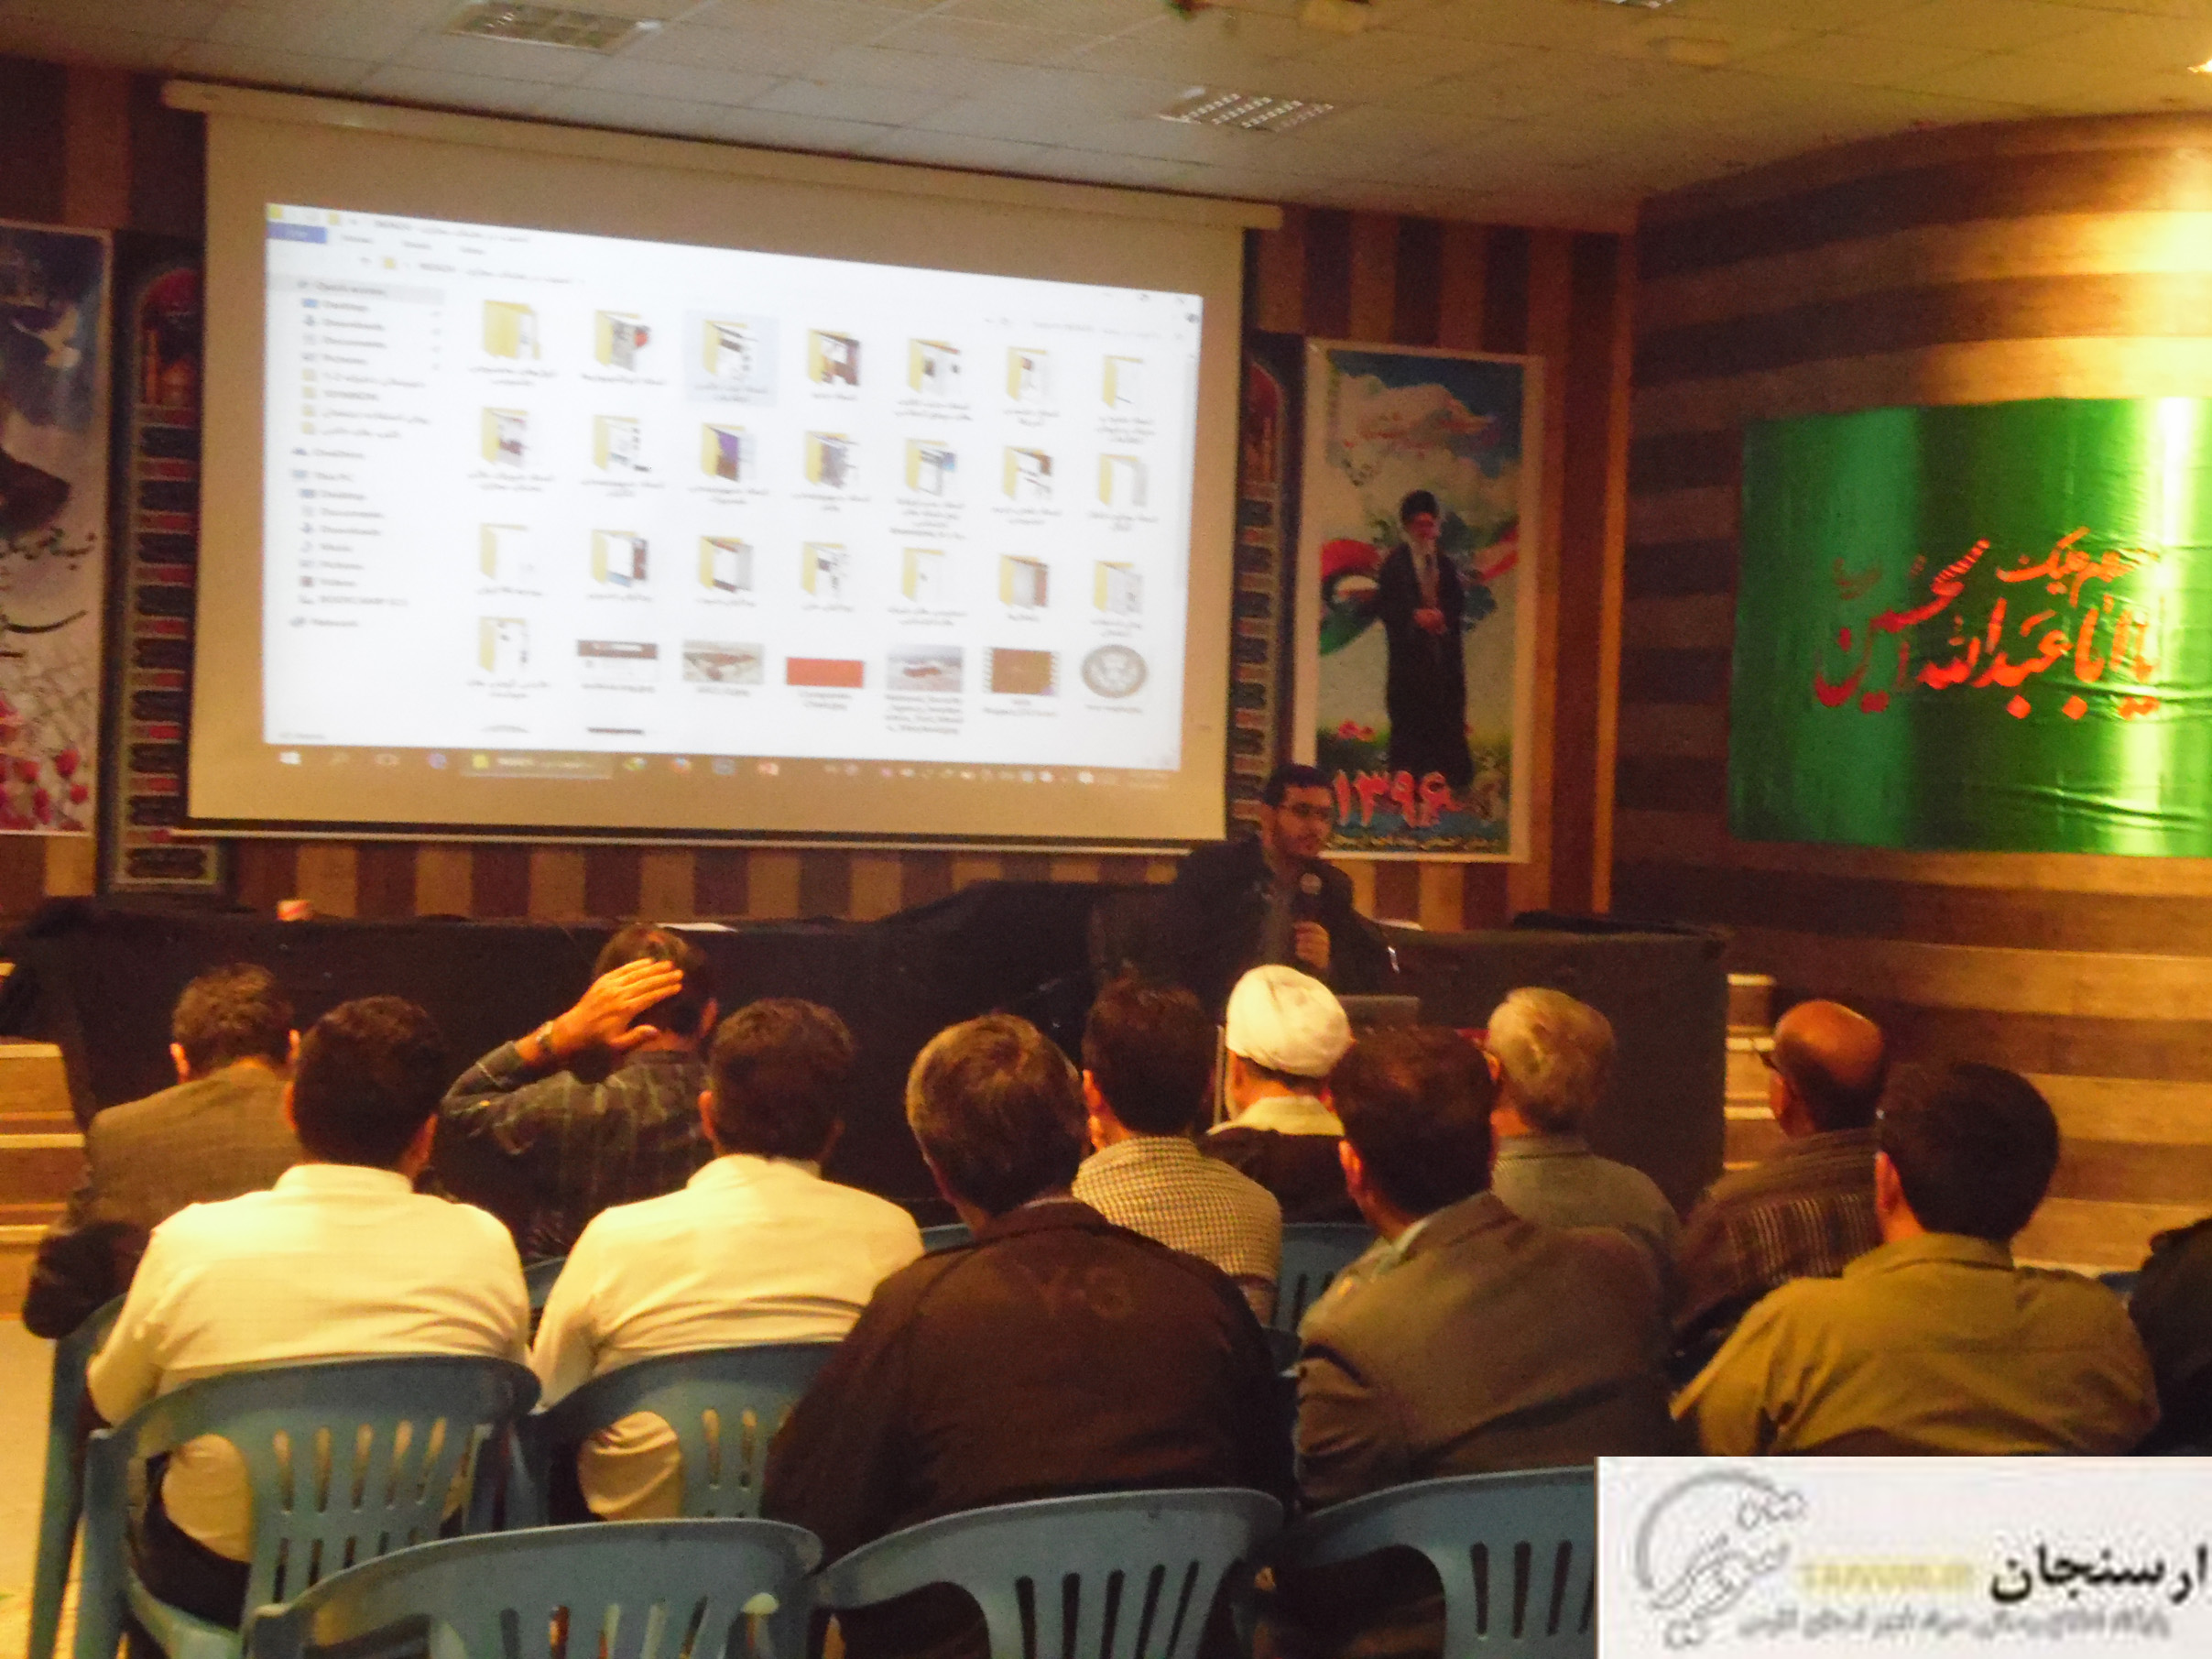 نخستین کارگاه آموزشی سواد رسانه ای برای دانش آموزان-پایوران-معلمان وبسیجیان برگزار شد